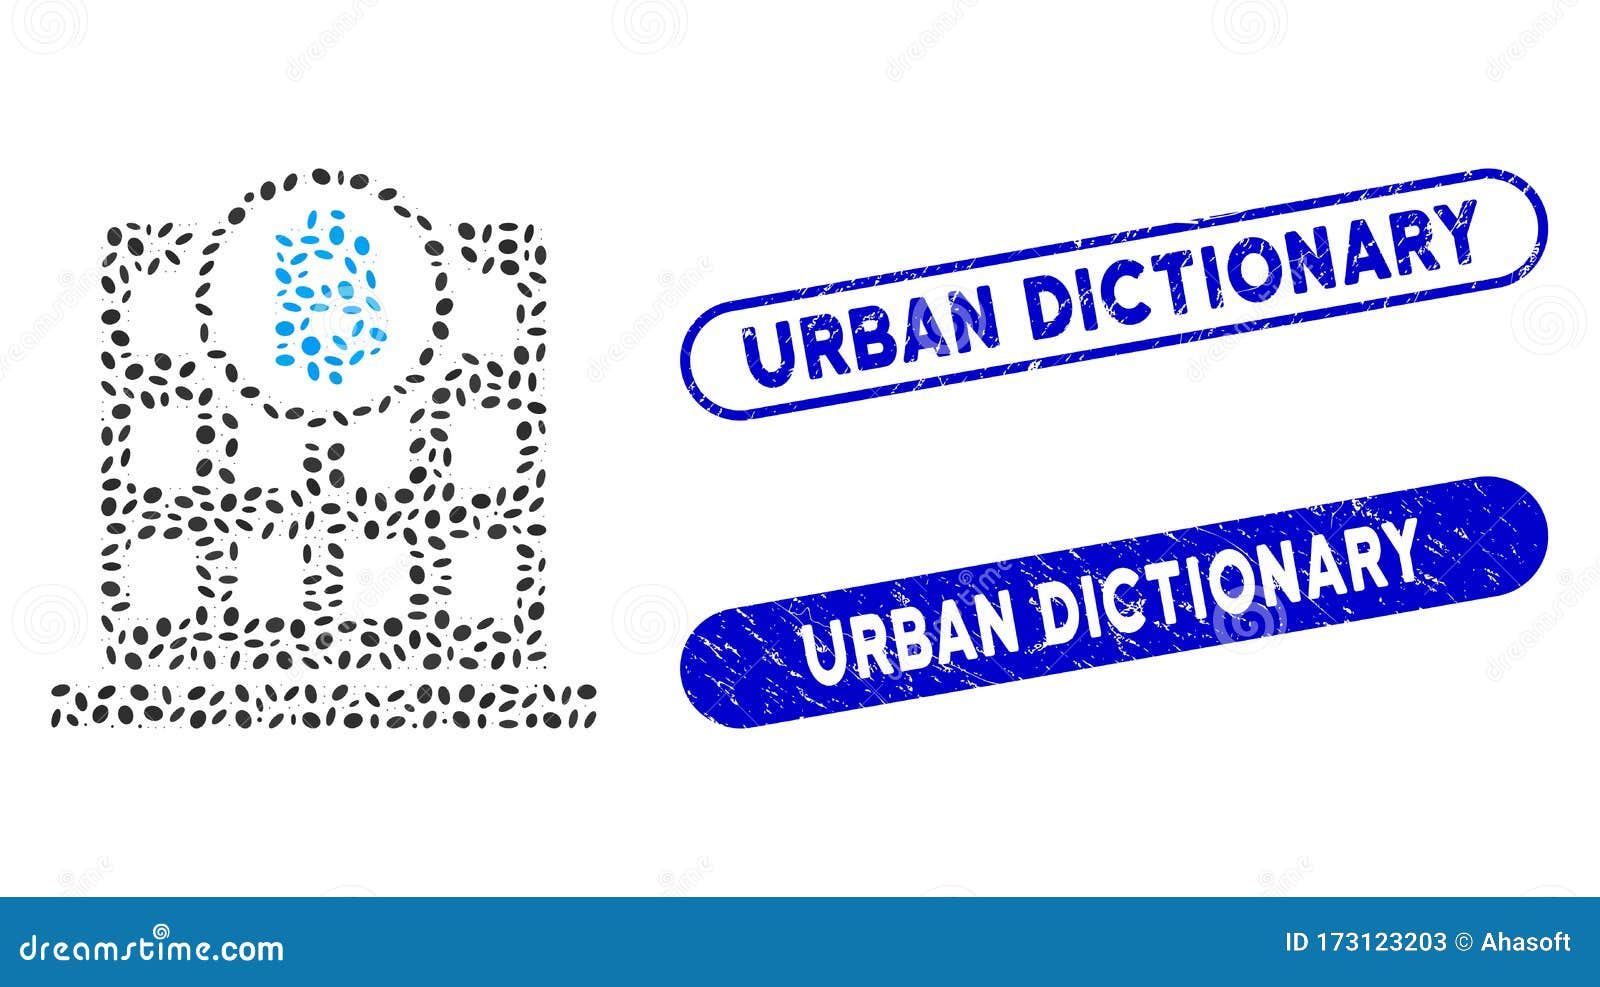 btc dicționar urban)